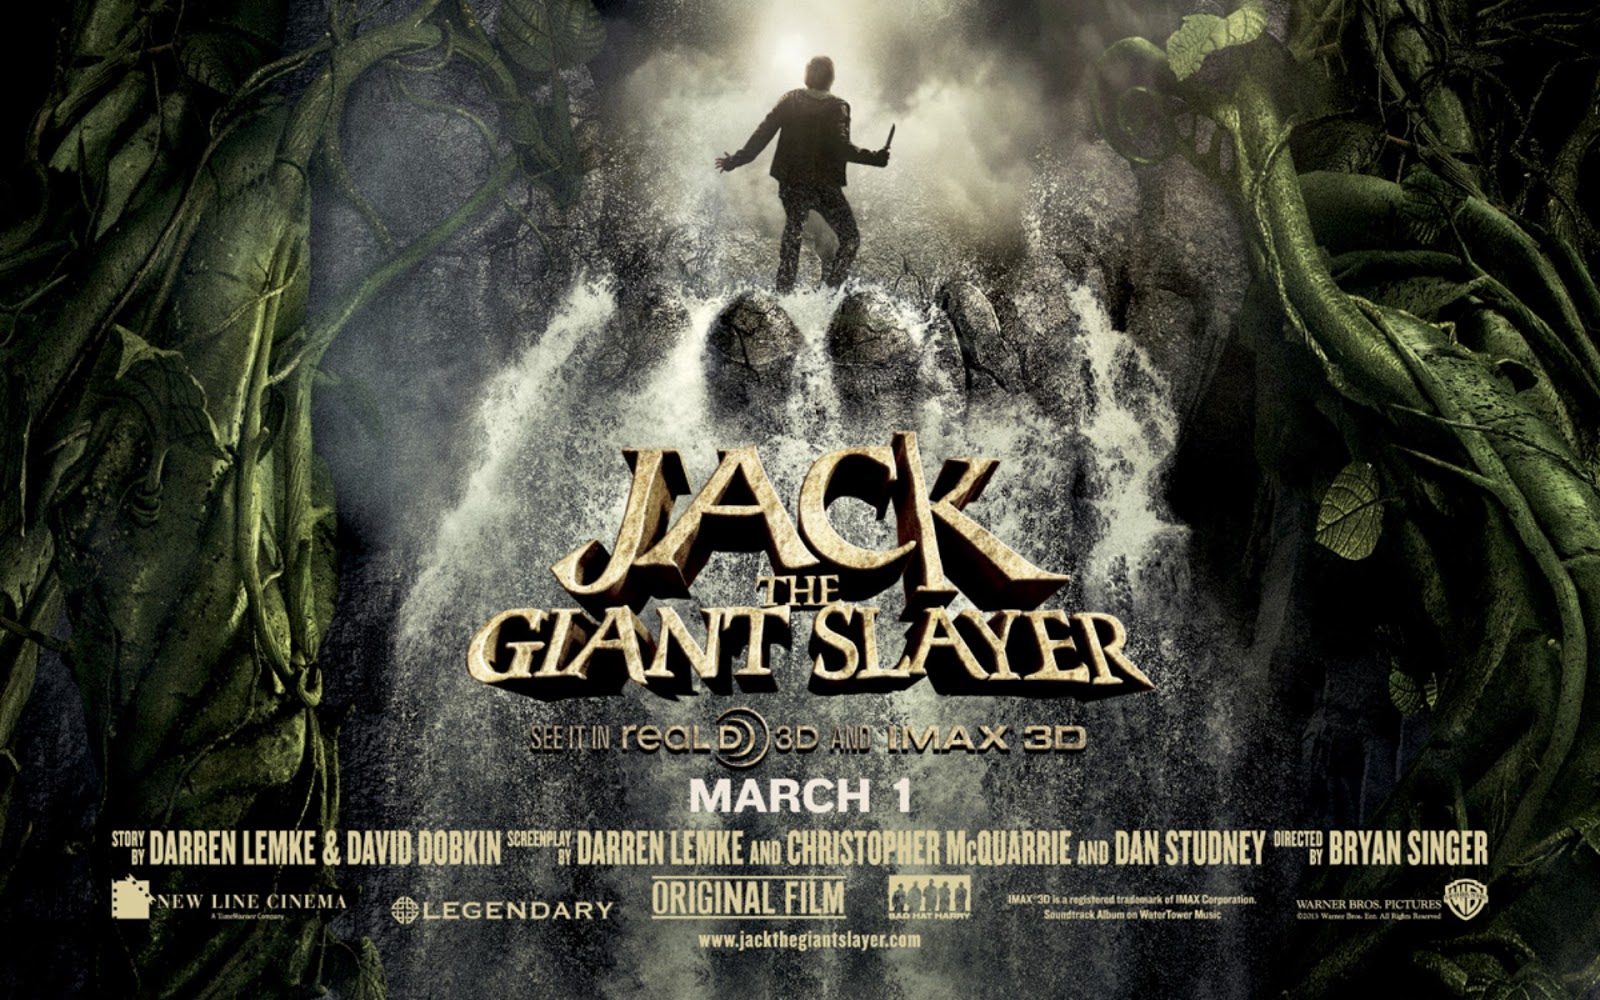 jack the giant slayer hindi dubbed movie